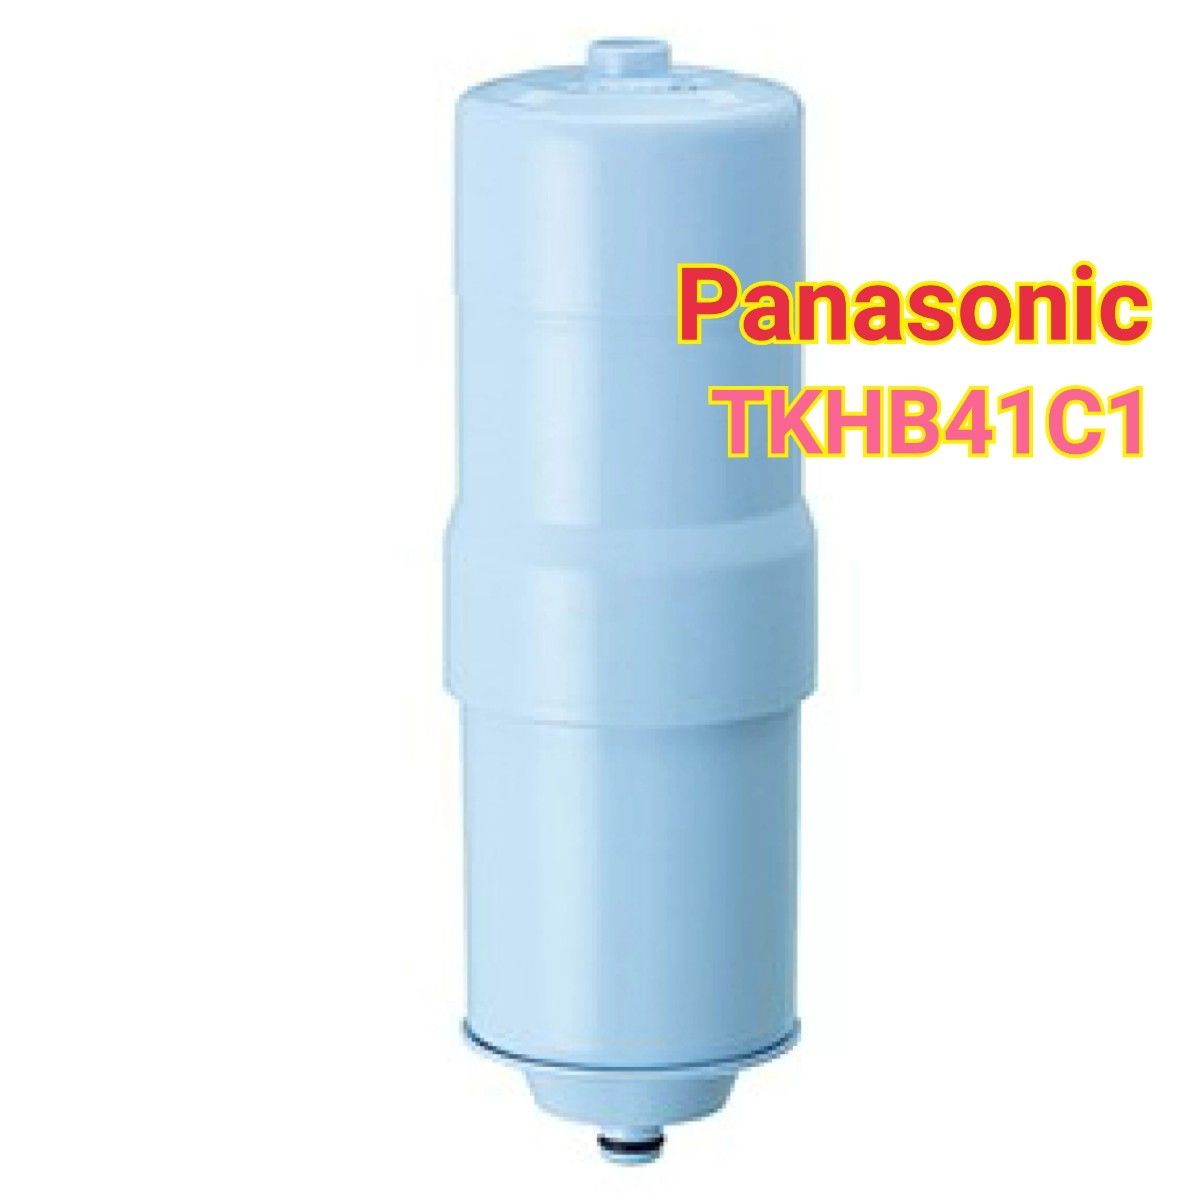 新品 パナソニック TK-HB41C1 還元水素水生成器用カートリッジ TKHB41C1 Yahoo!フリマ（旧）のサムネイル